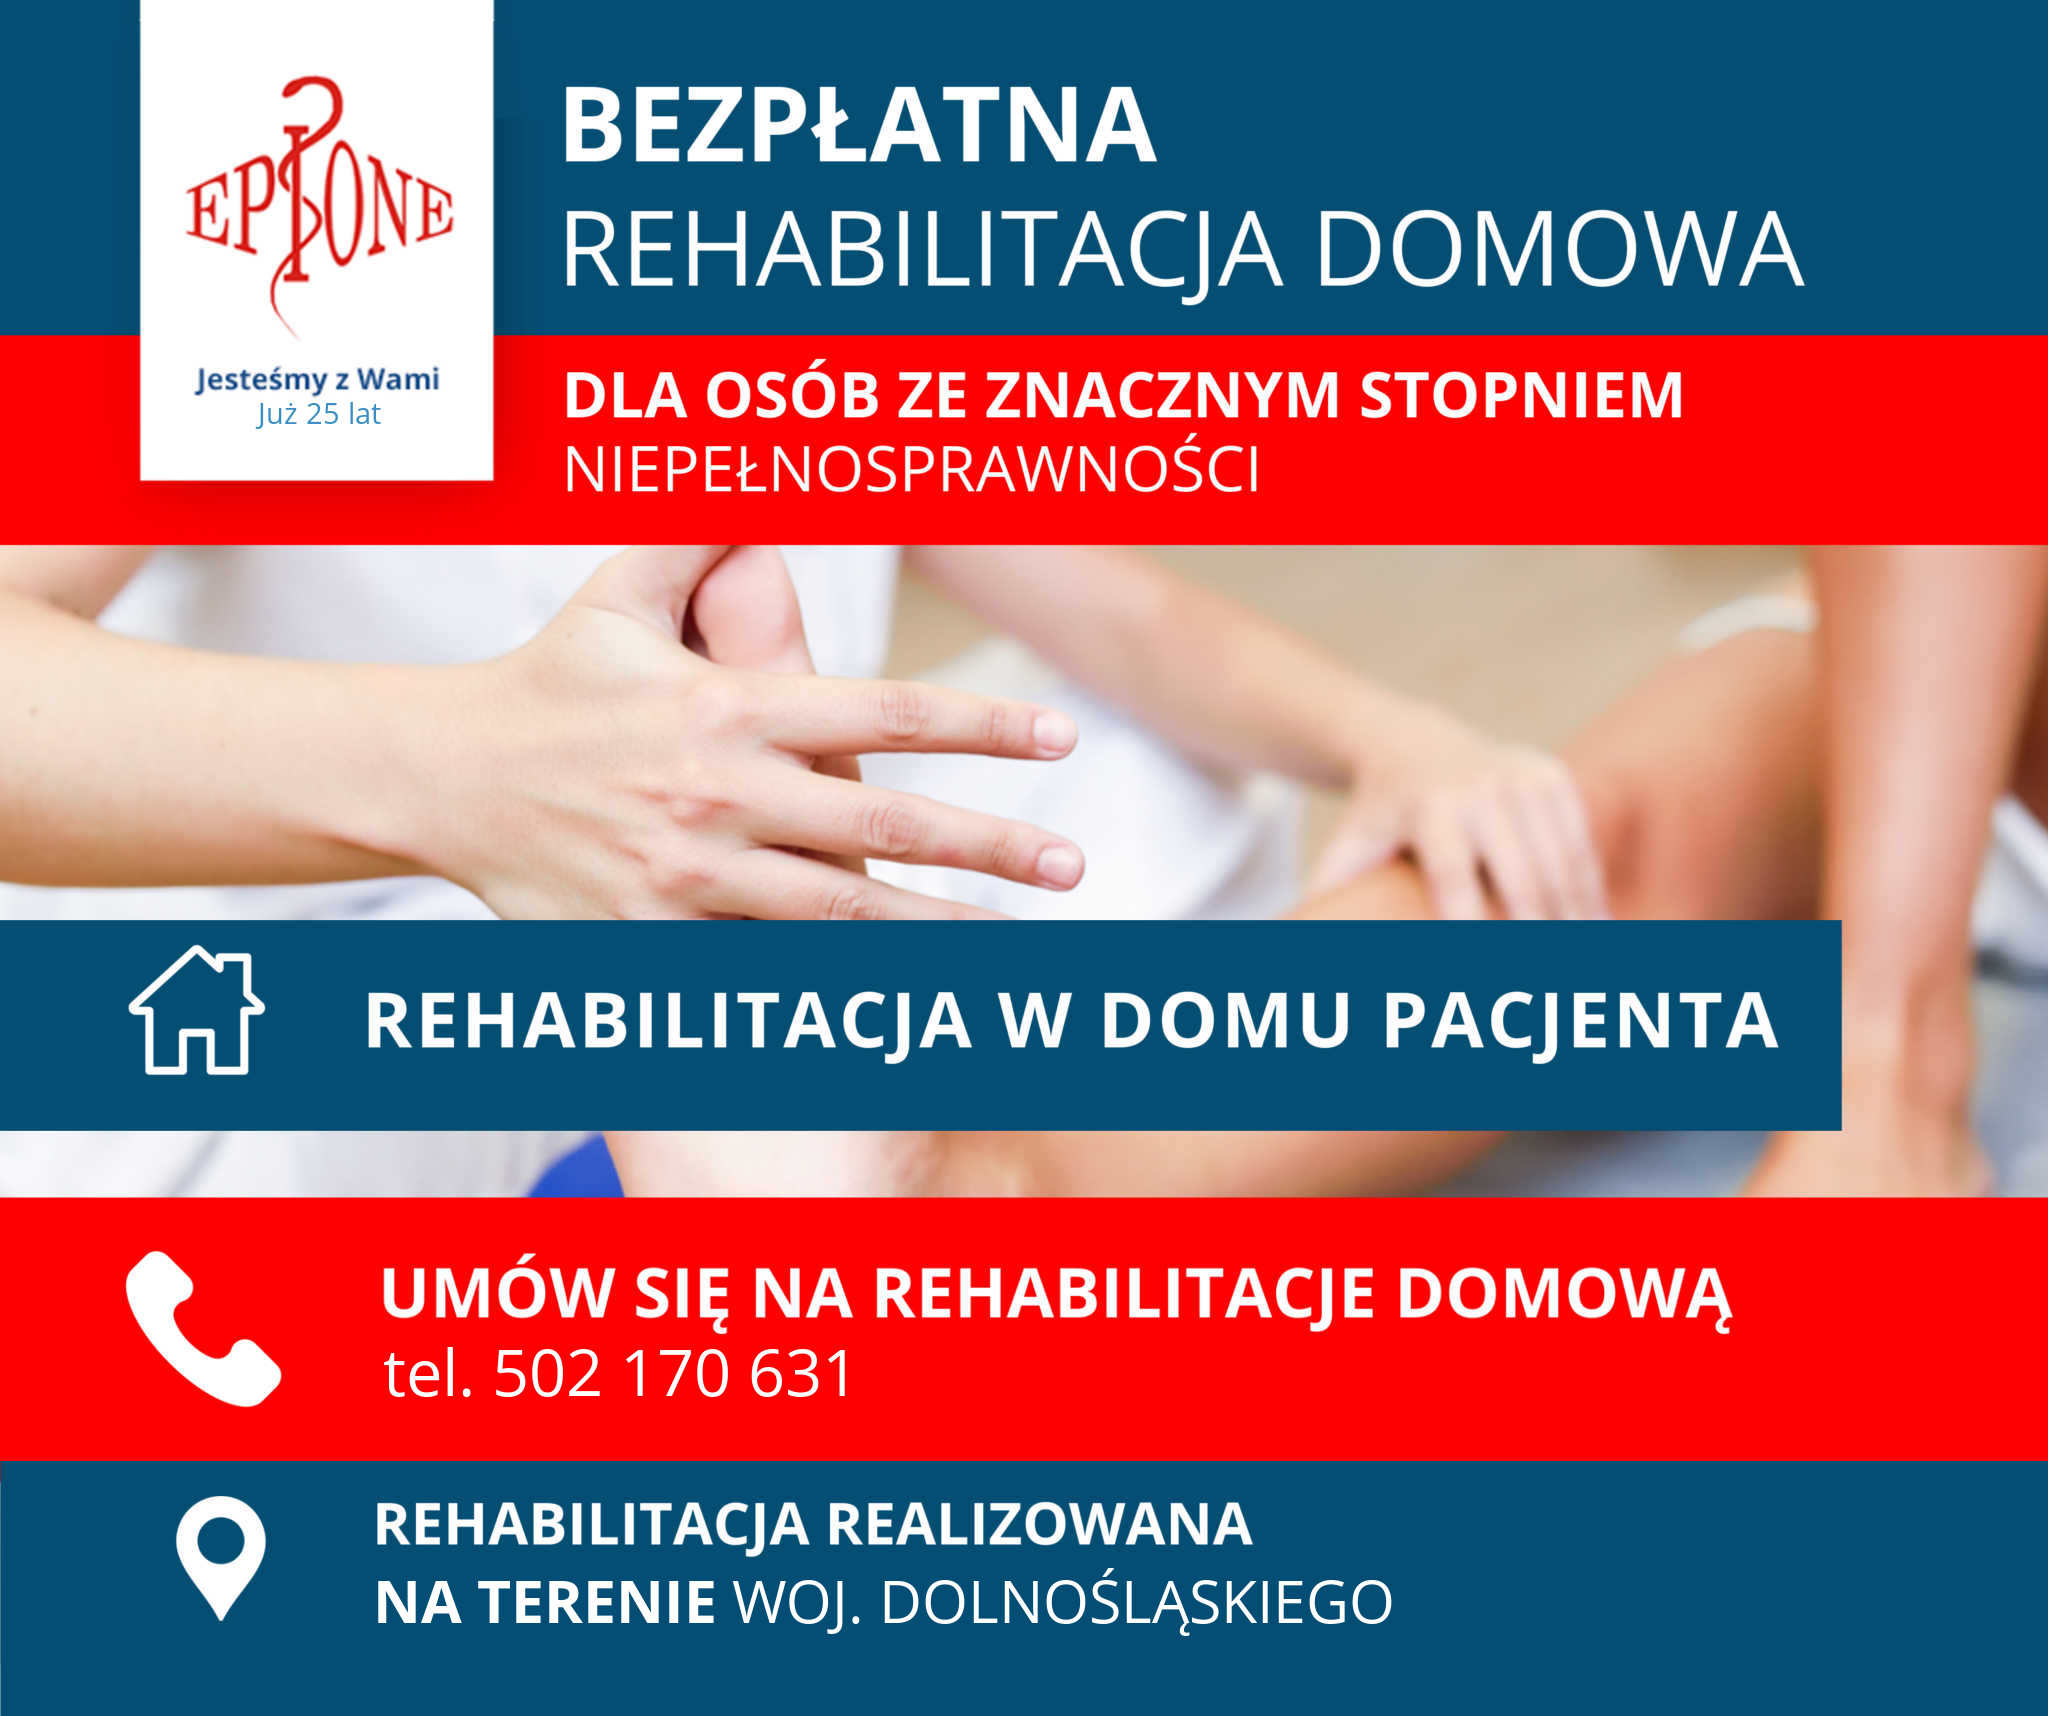 Rehabilitacja NFZ Wrocław Bezpłatna Dolnośląskie